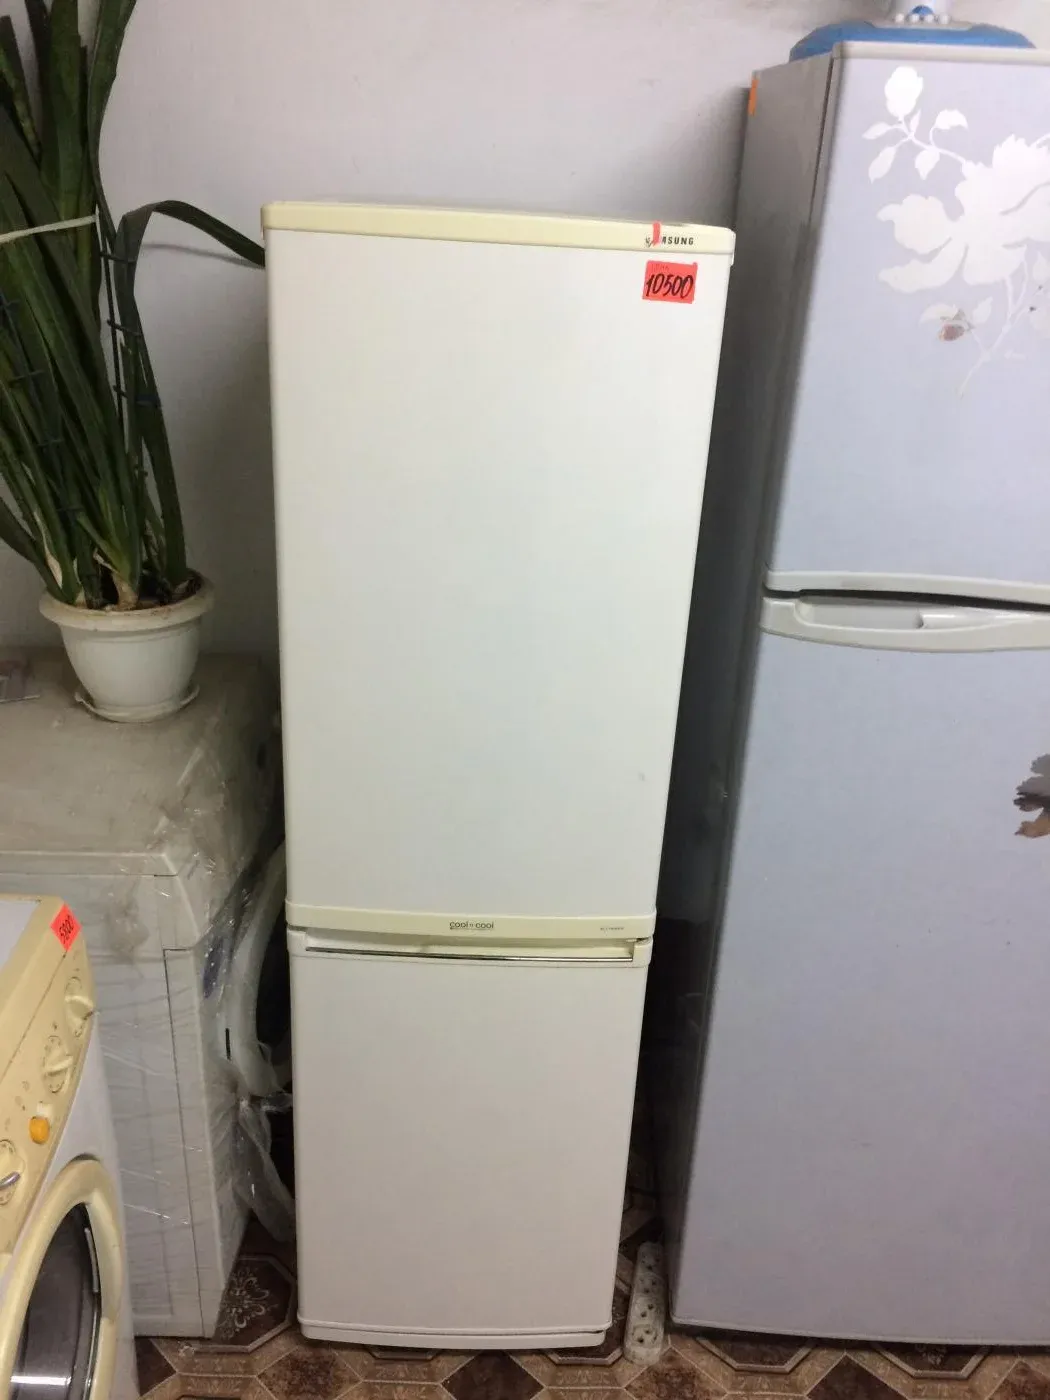 Узкие холодильники до 55 см. Холодильник самсунг узкий 45 см. Холодильник самсунг 45 см ширина двухкамерный. Холодильник узкий 45 см двухкамерный самсунг. Узкий холодильник 40 см двухкамерный Samsung.